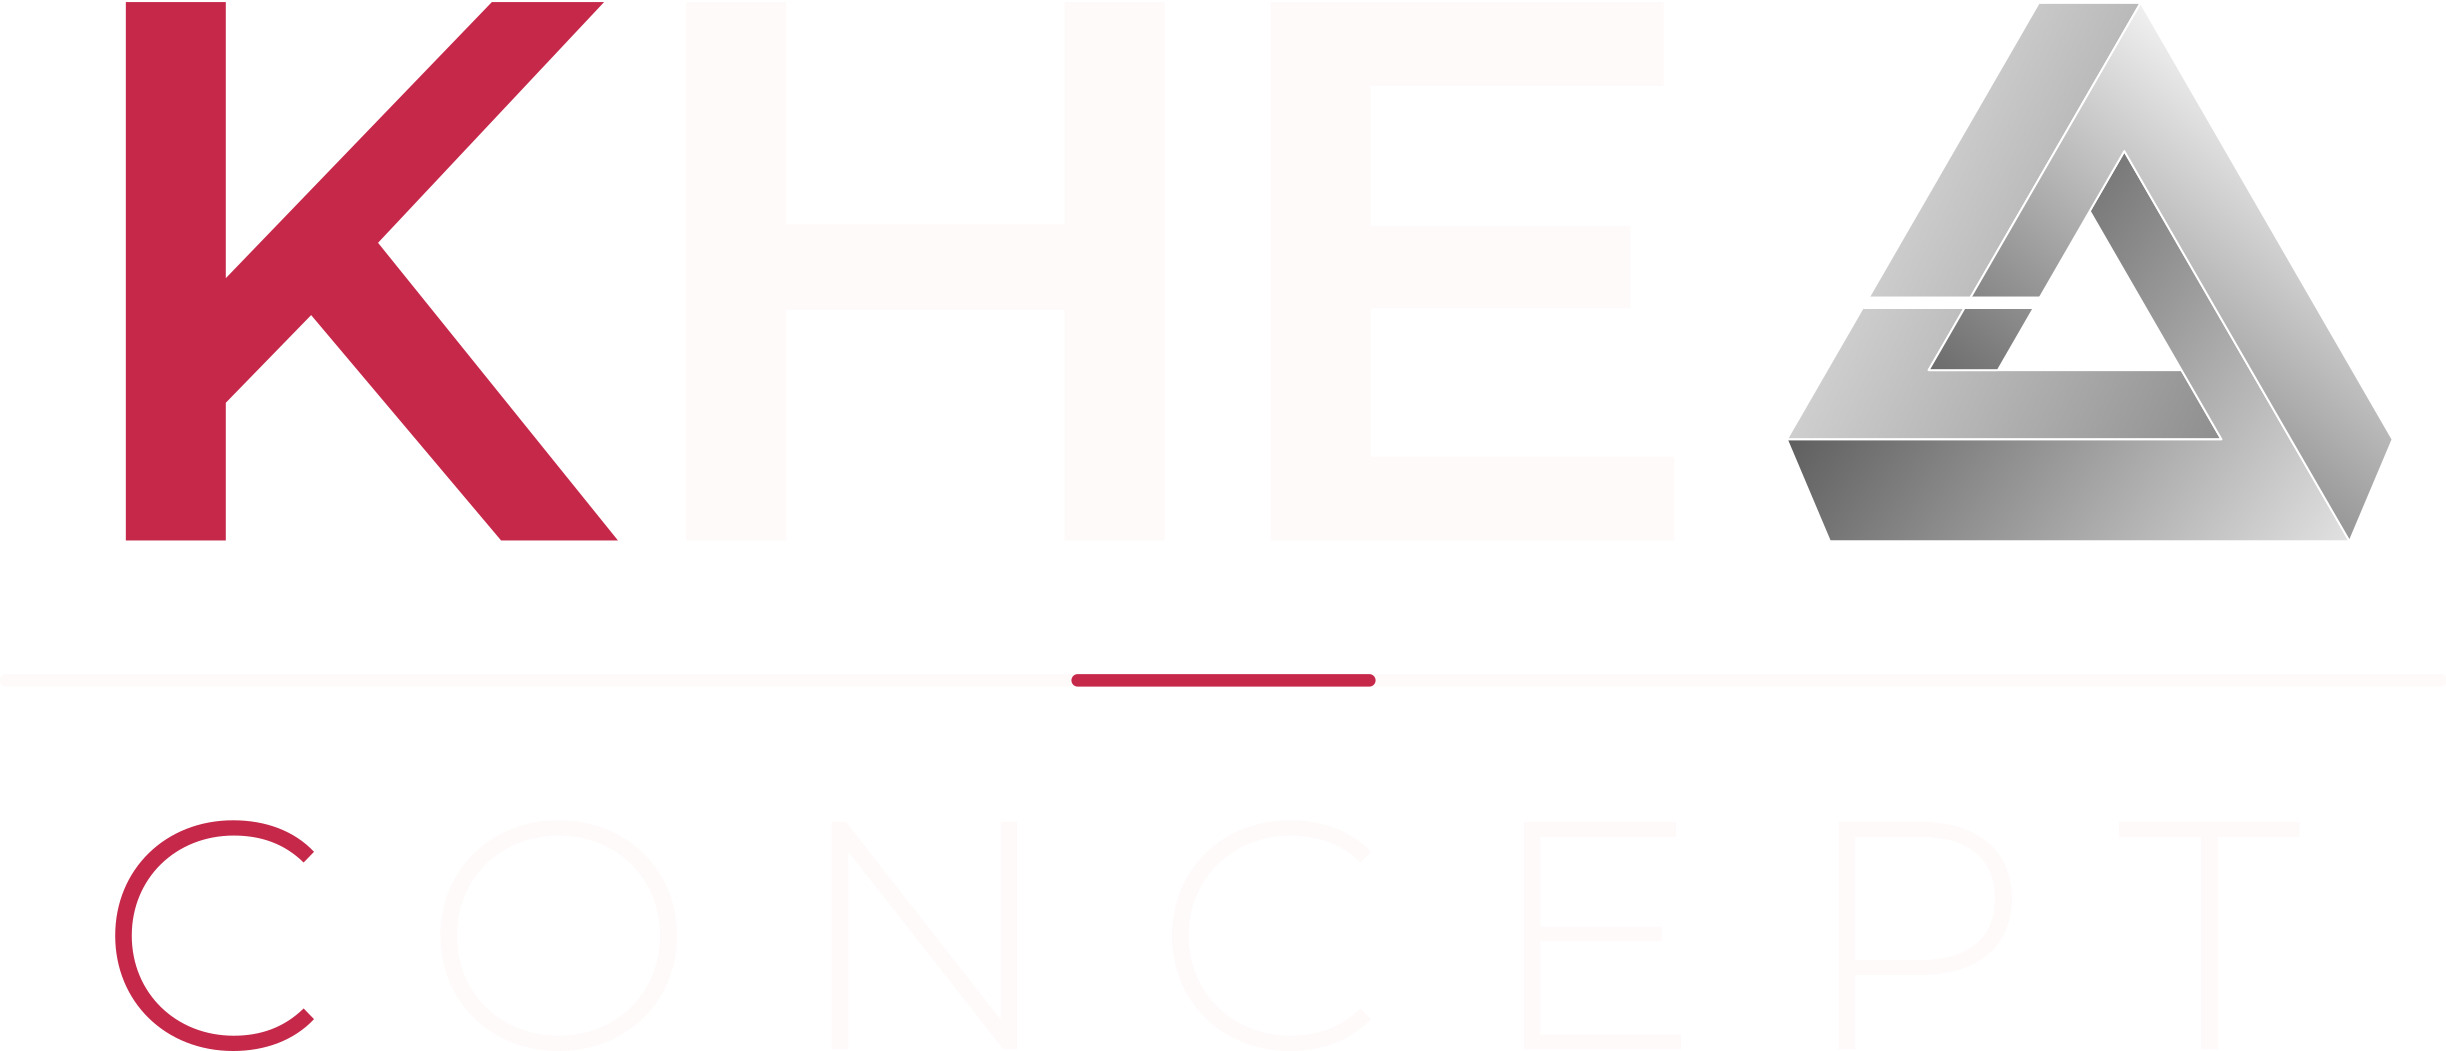 Logo Khea concept bureau d'étude et de consultant en ingénierie